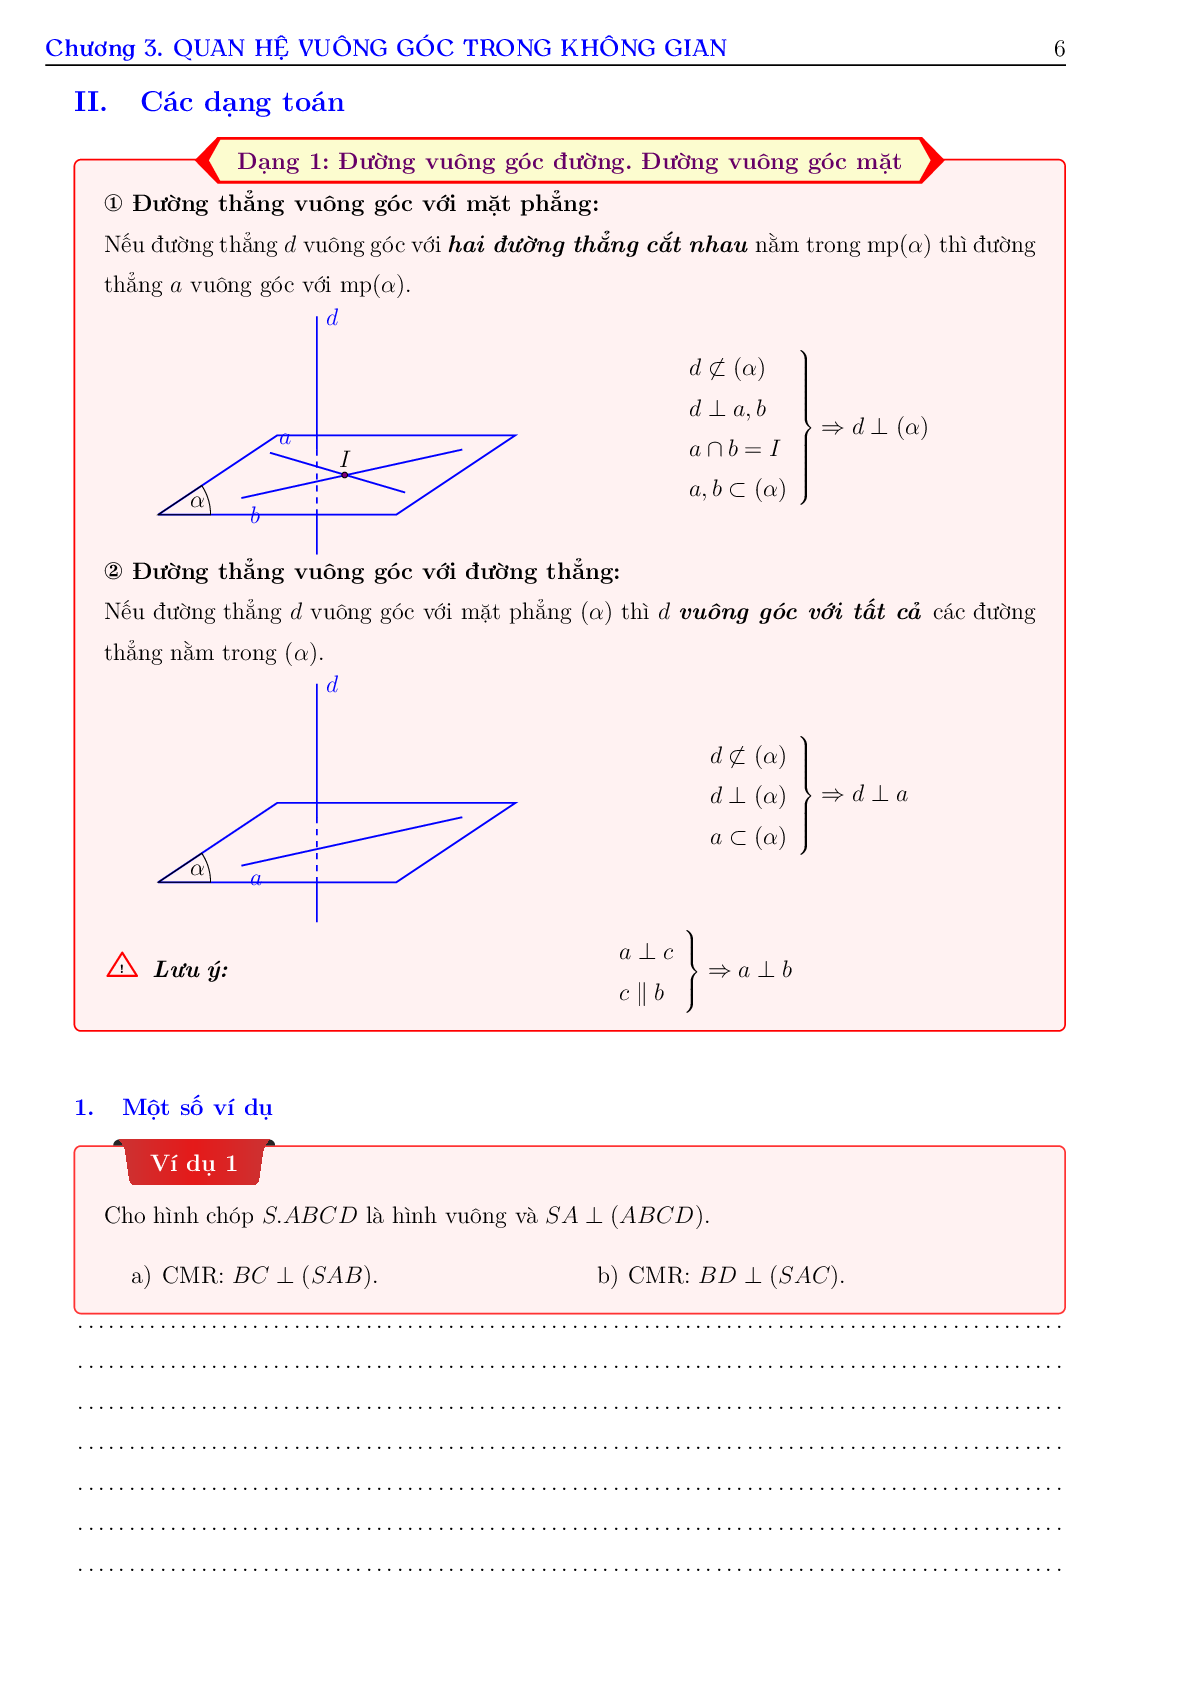 Phương pháp giải toán về quan hệ vuông góc (trang 6)